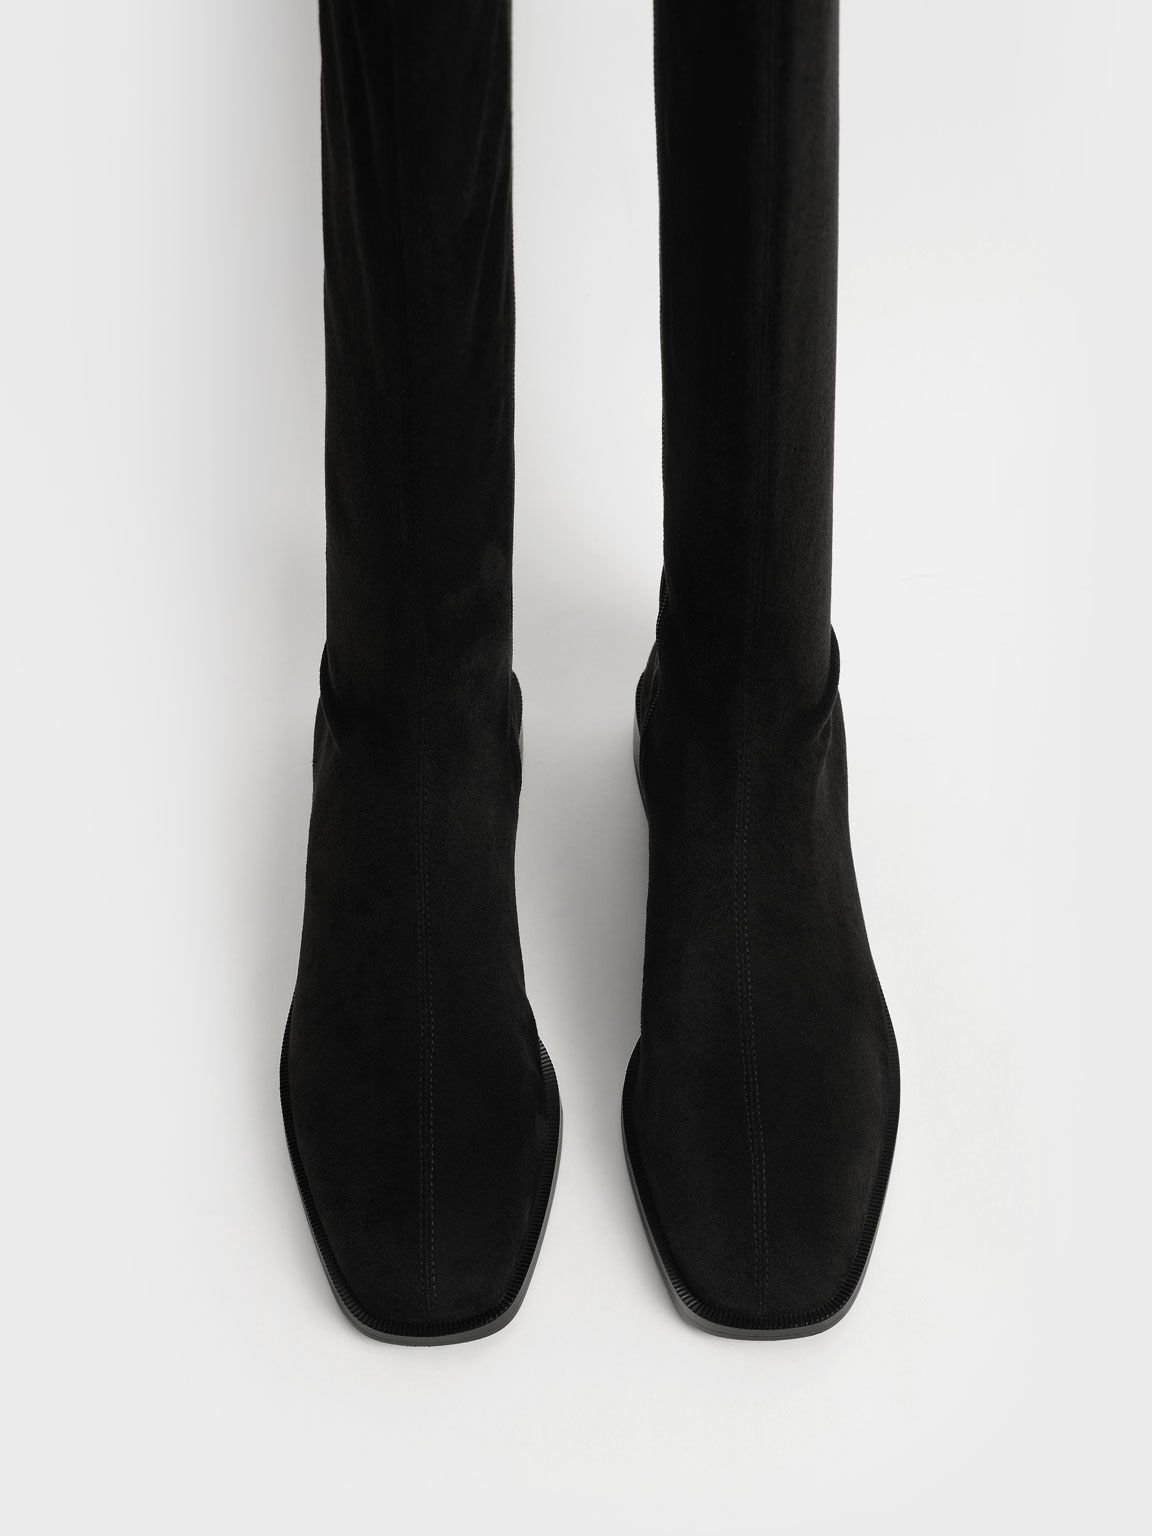 仿麂皮拉鍊長靴, 黑色特別款, hi-res